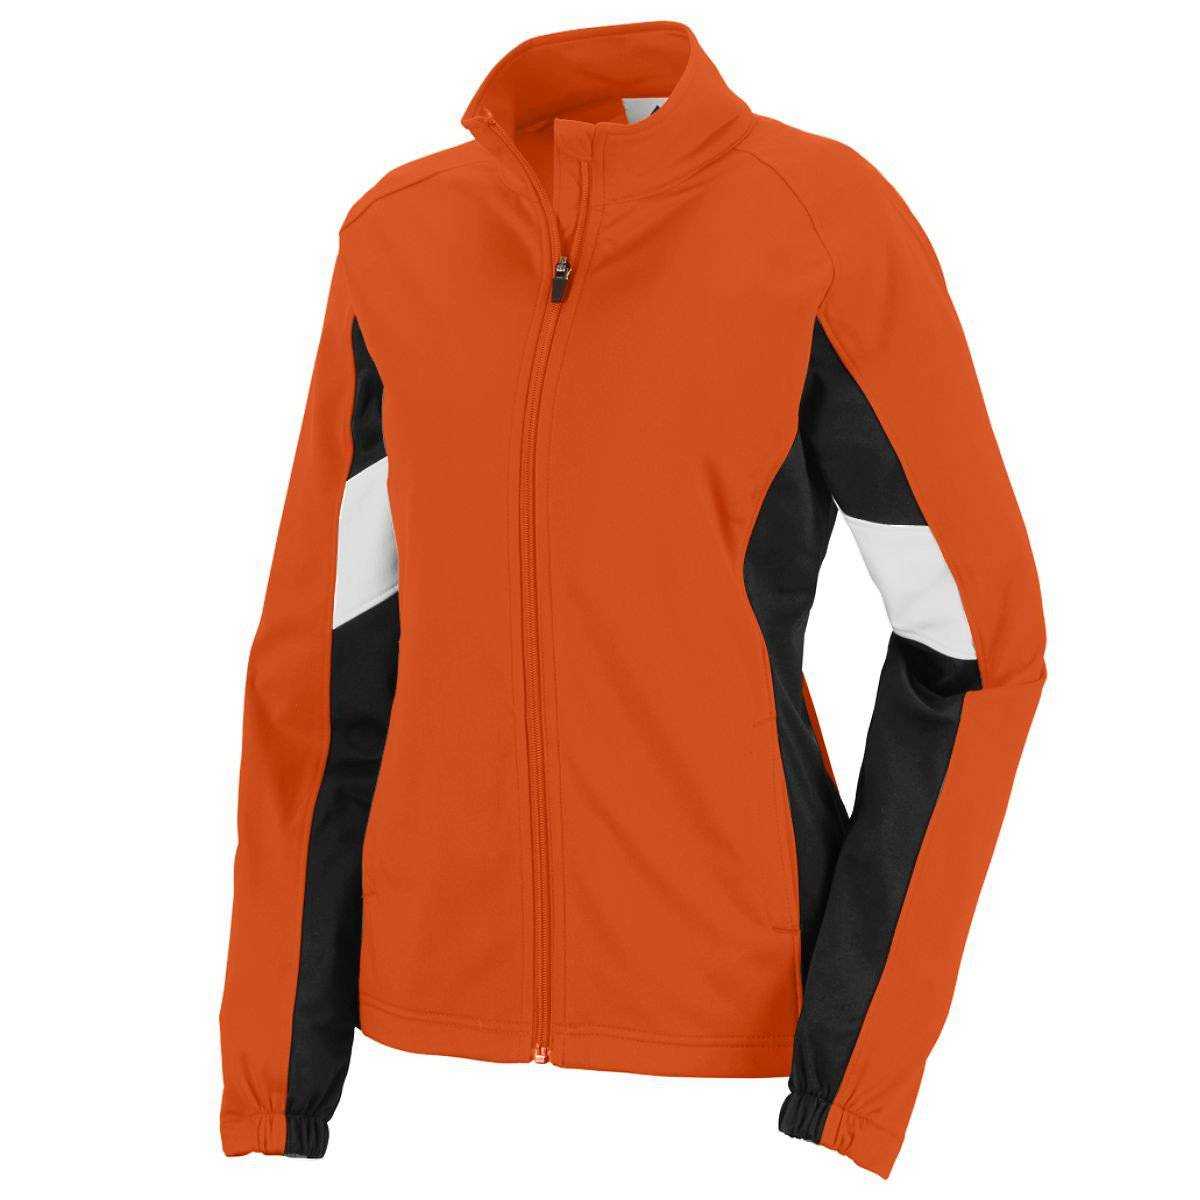 Augusta 7724 Ladies Tour De Force Jacket - Orange Black White - HIT a Double